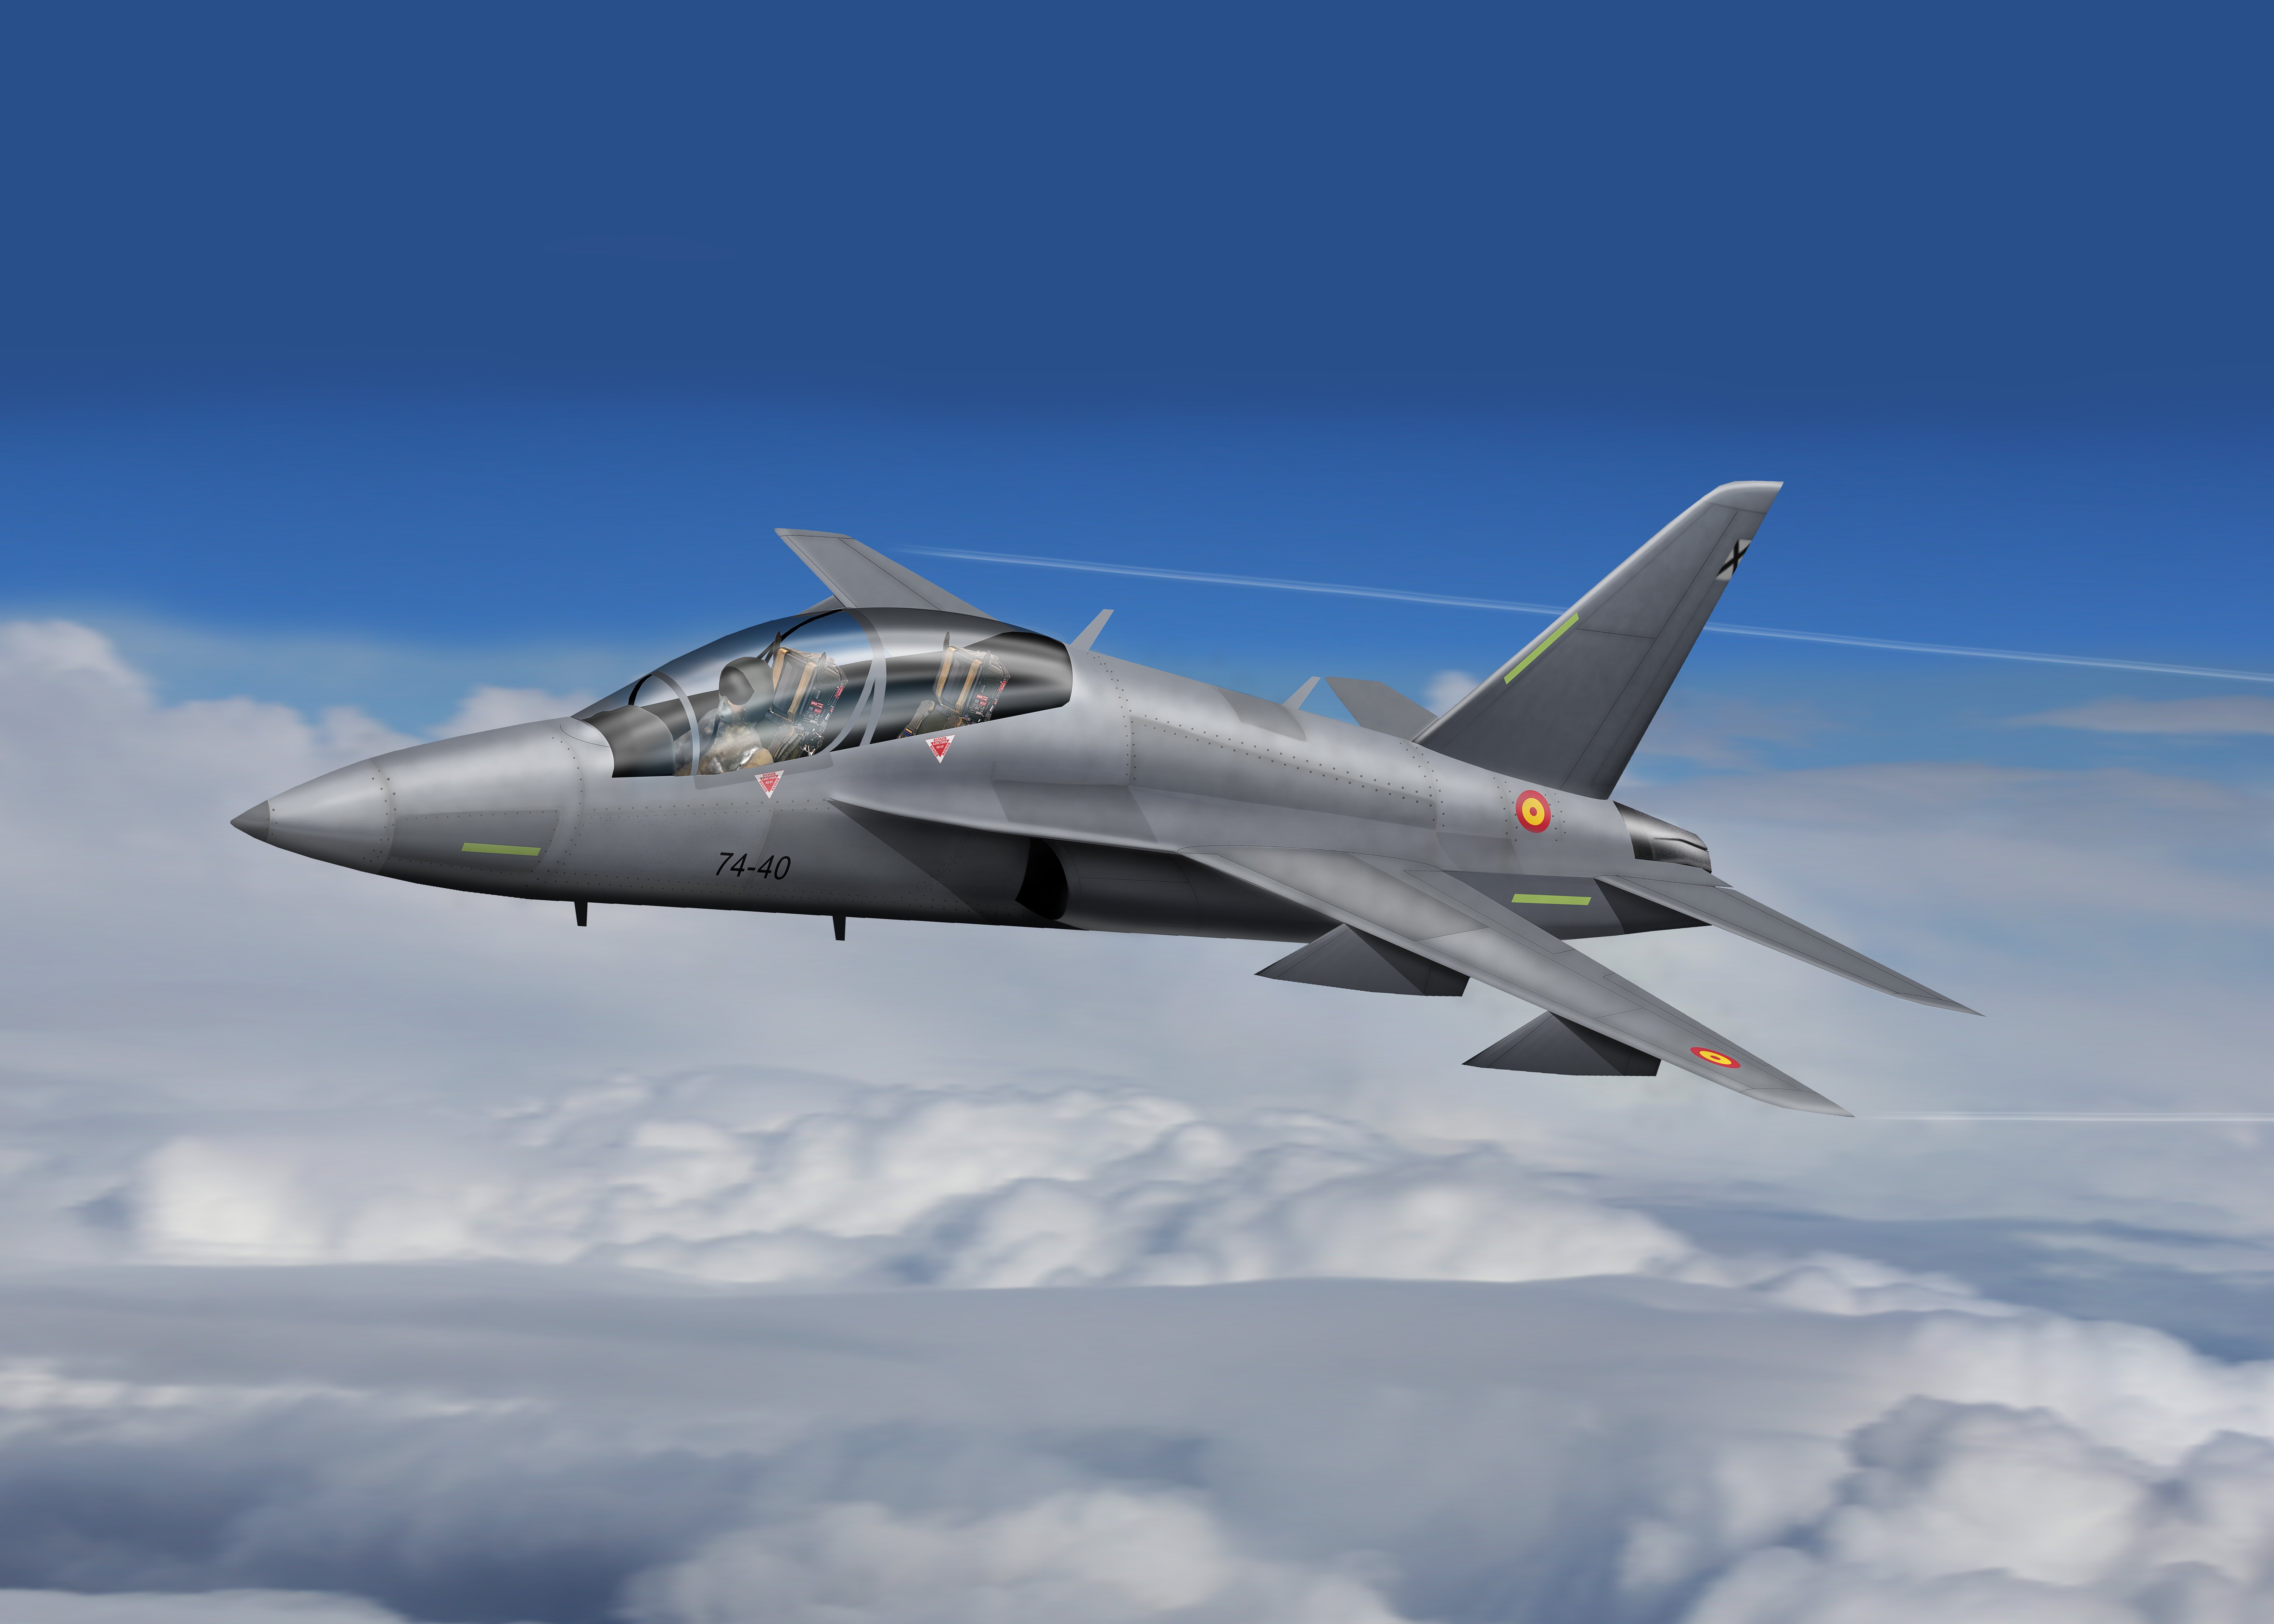 AFJT in flight concept image [Ryan Dorling]